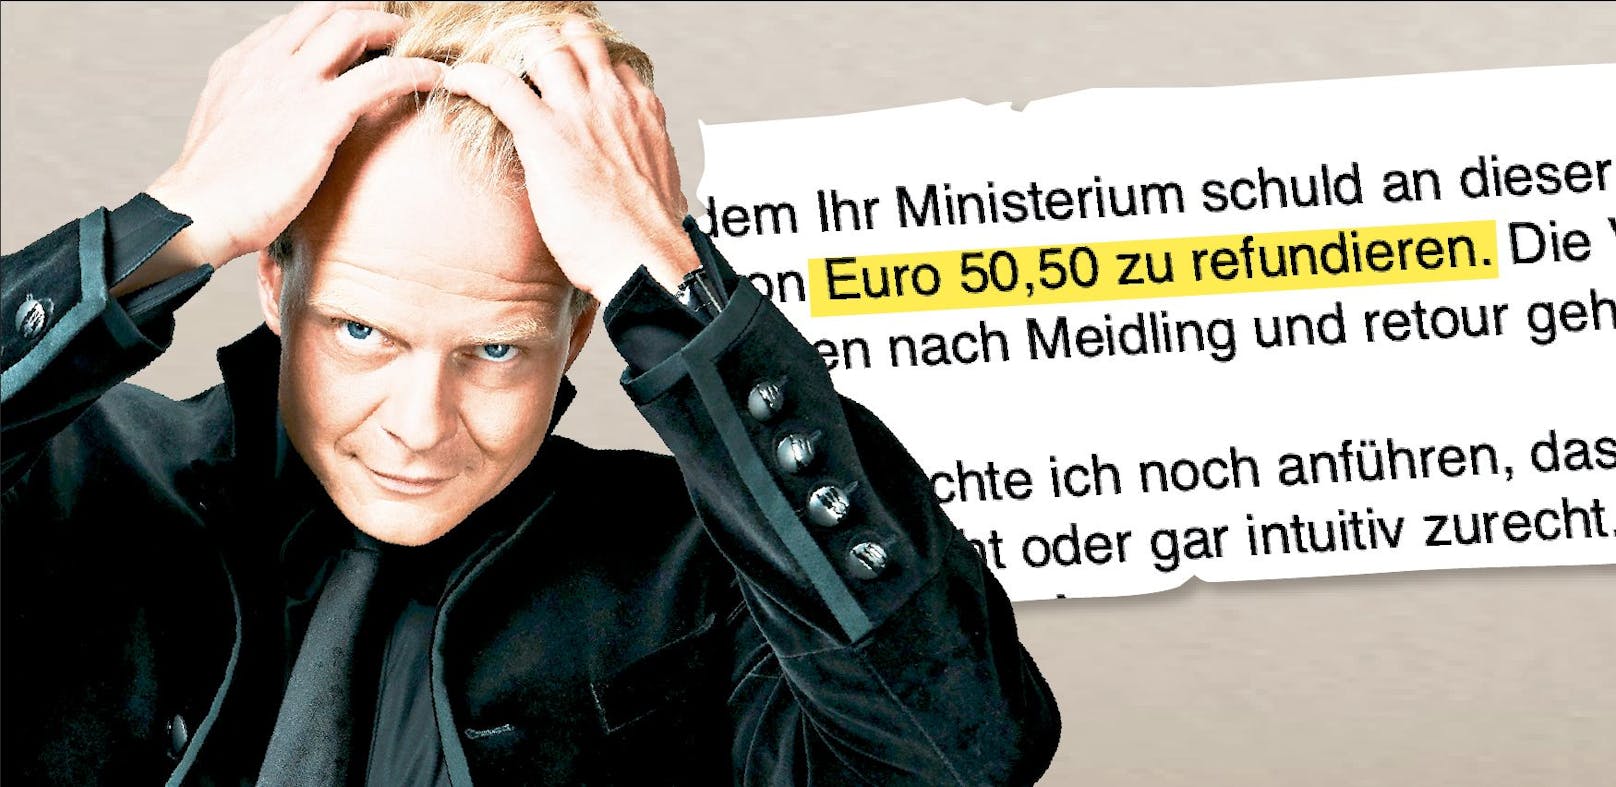 Verkehrsstrafe – Wiener will, dass Minister für ihn zahlt